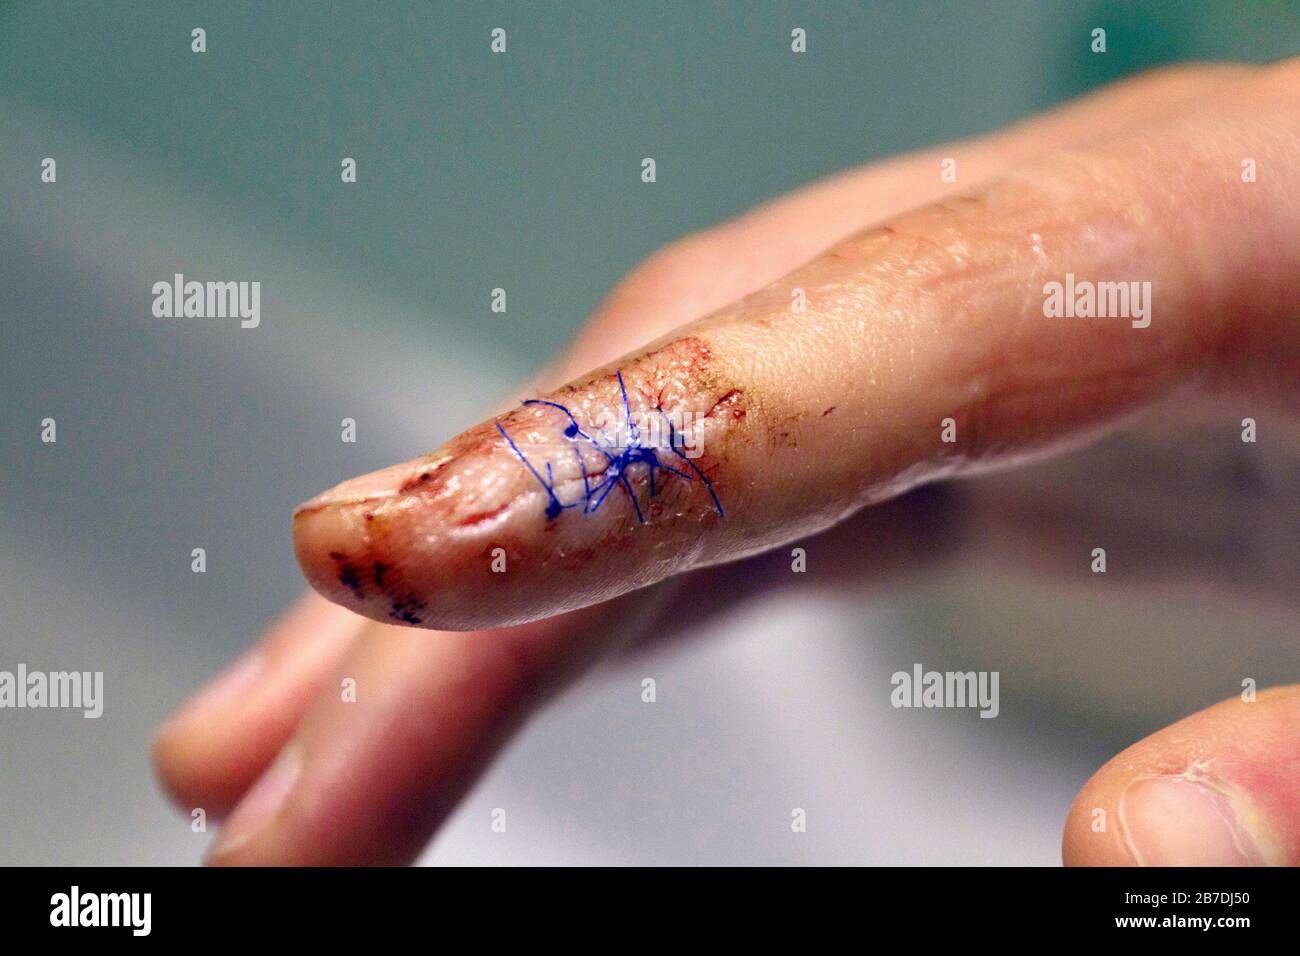 Nahaufnahme eines gezogenen Fingers mit blutigen Stichen, die einen langen, tiefen Schnitt am Ende eines Zeigefingers abschließen Stockfoto